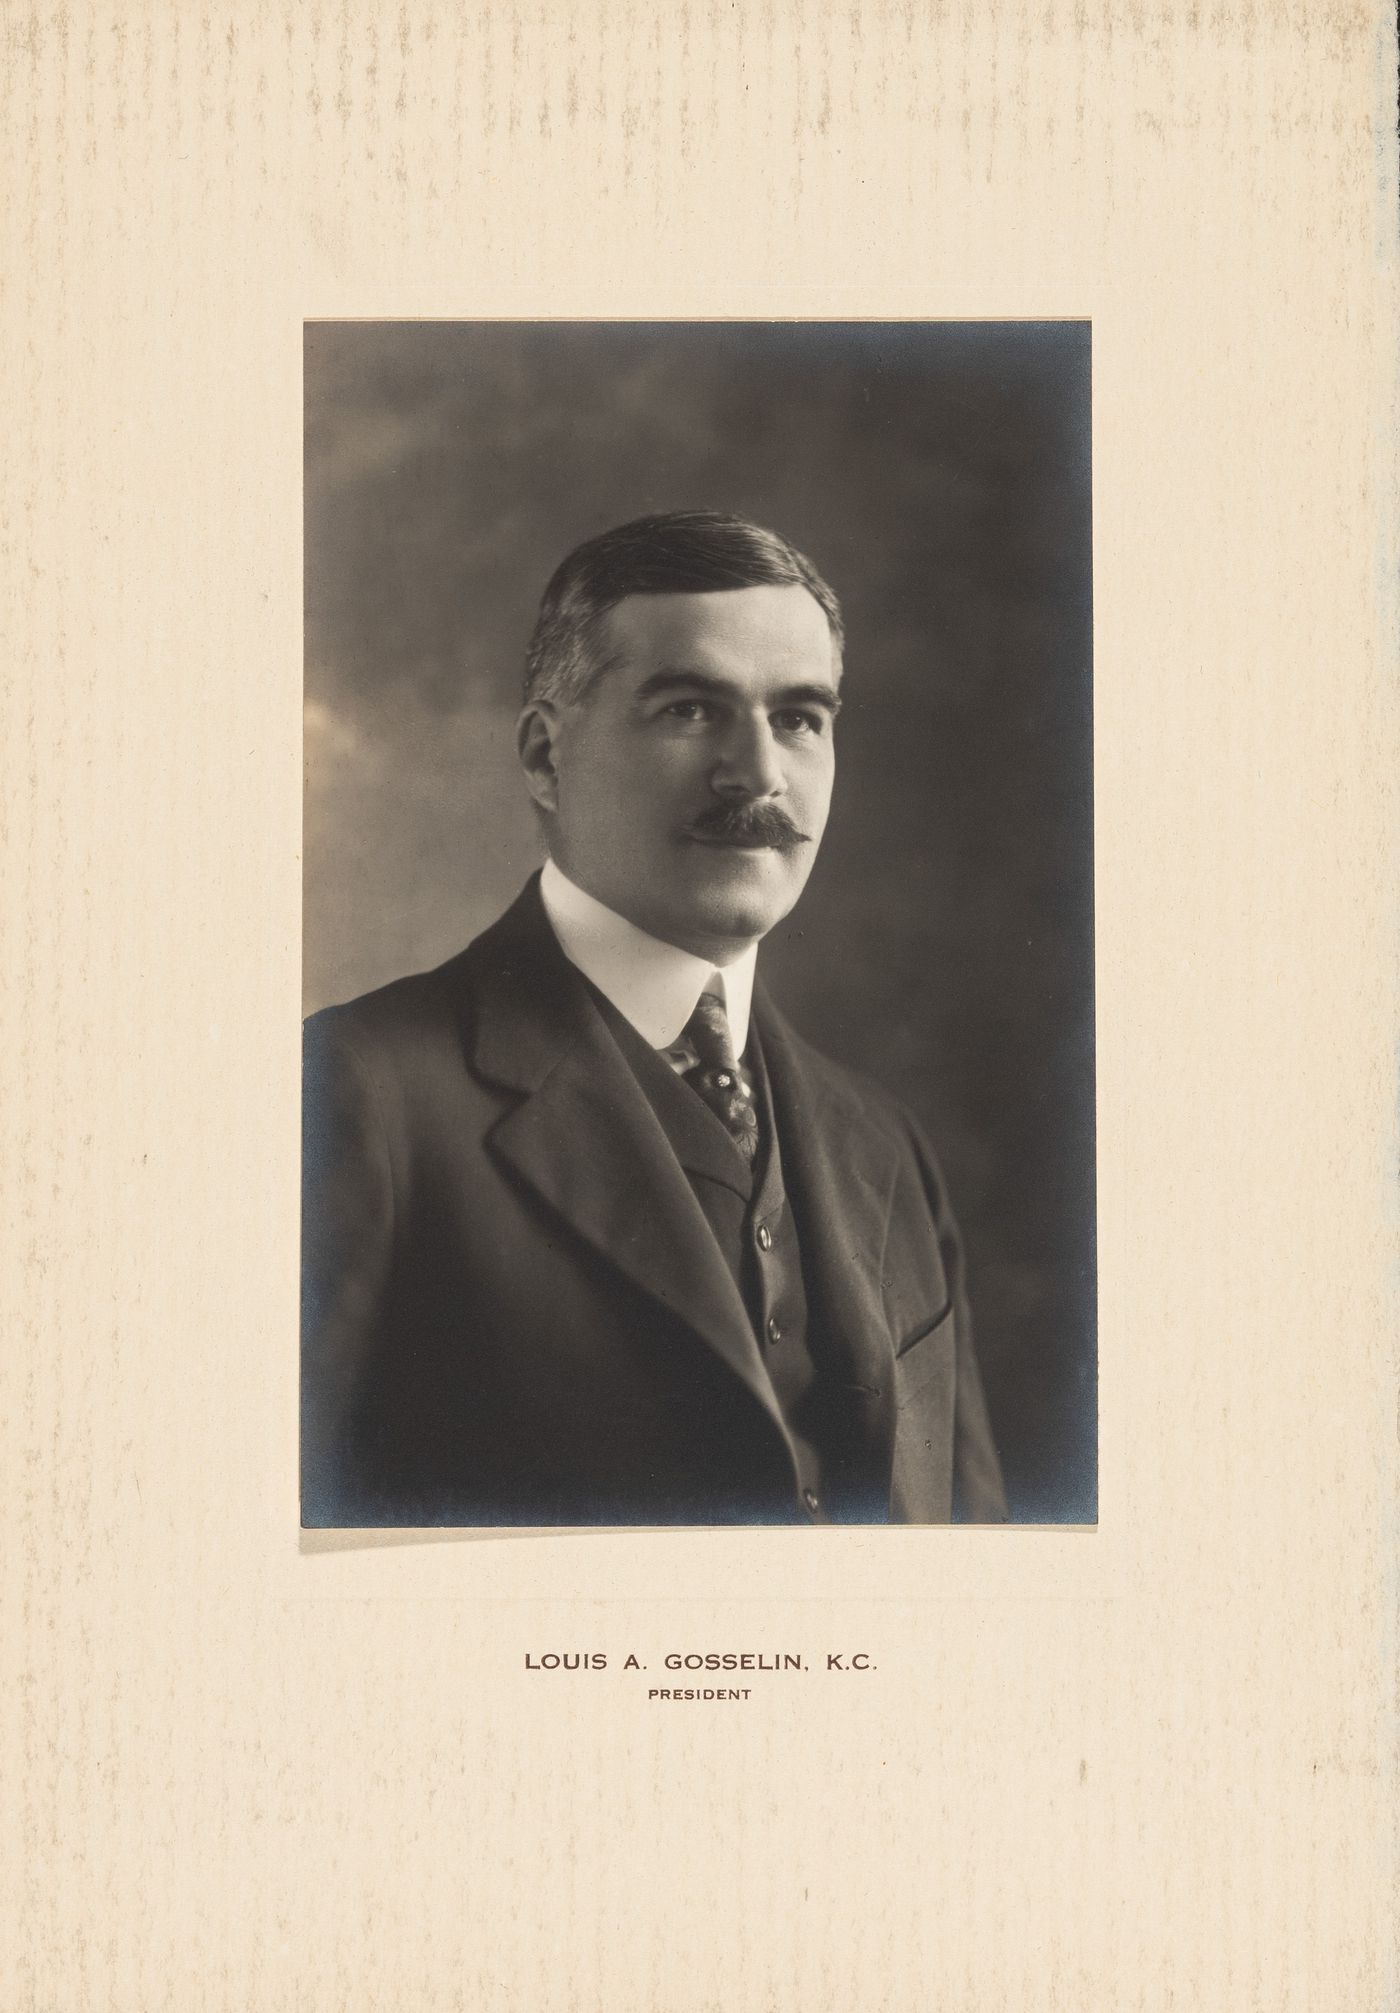 Portrait of Louis A. Gosselin K.C., President, Energite Explosives Company